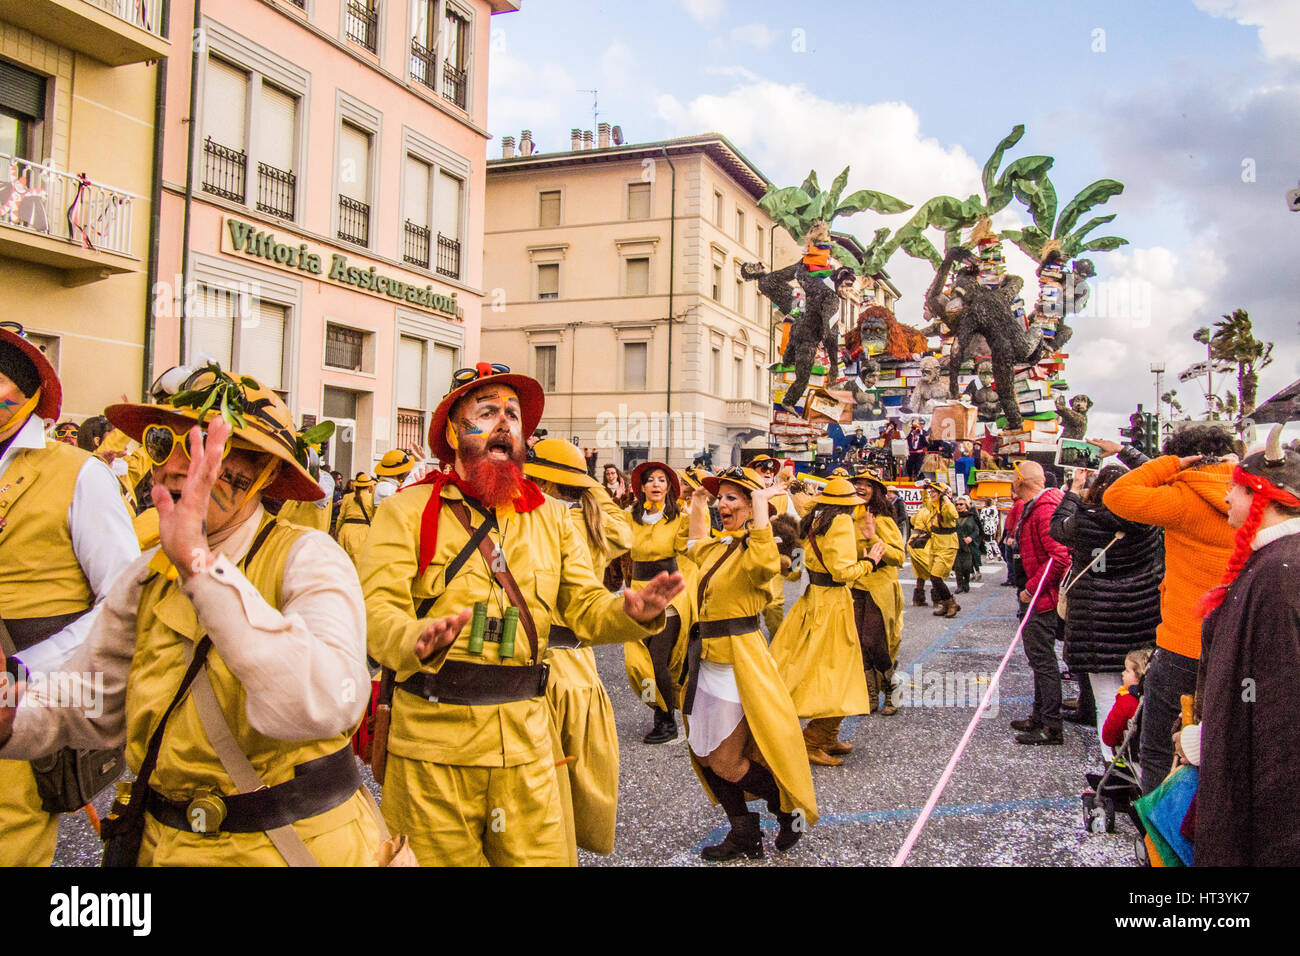 Viareggio Carnival in the province of Lucca, Tuscany region, Italy. Stock Photo